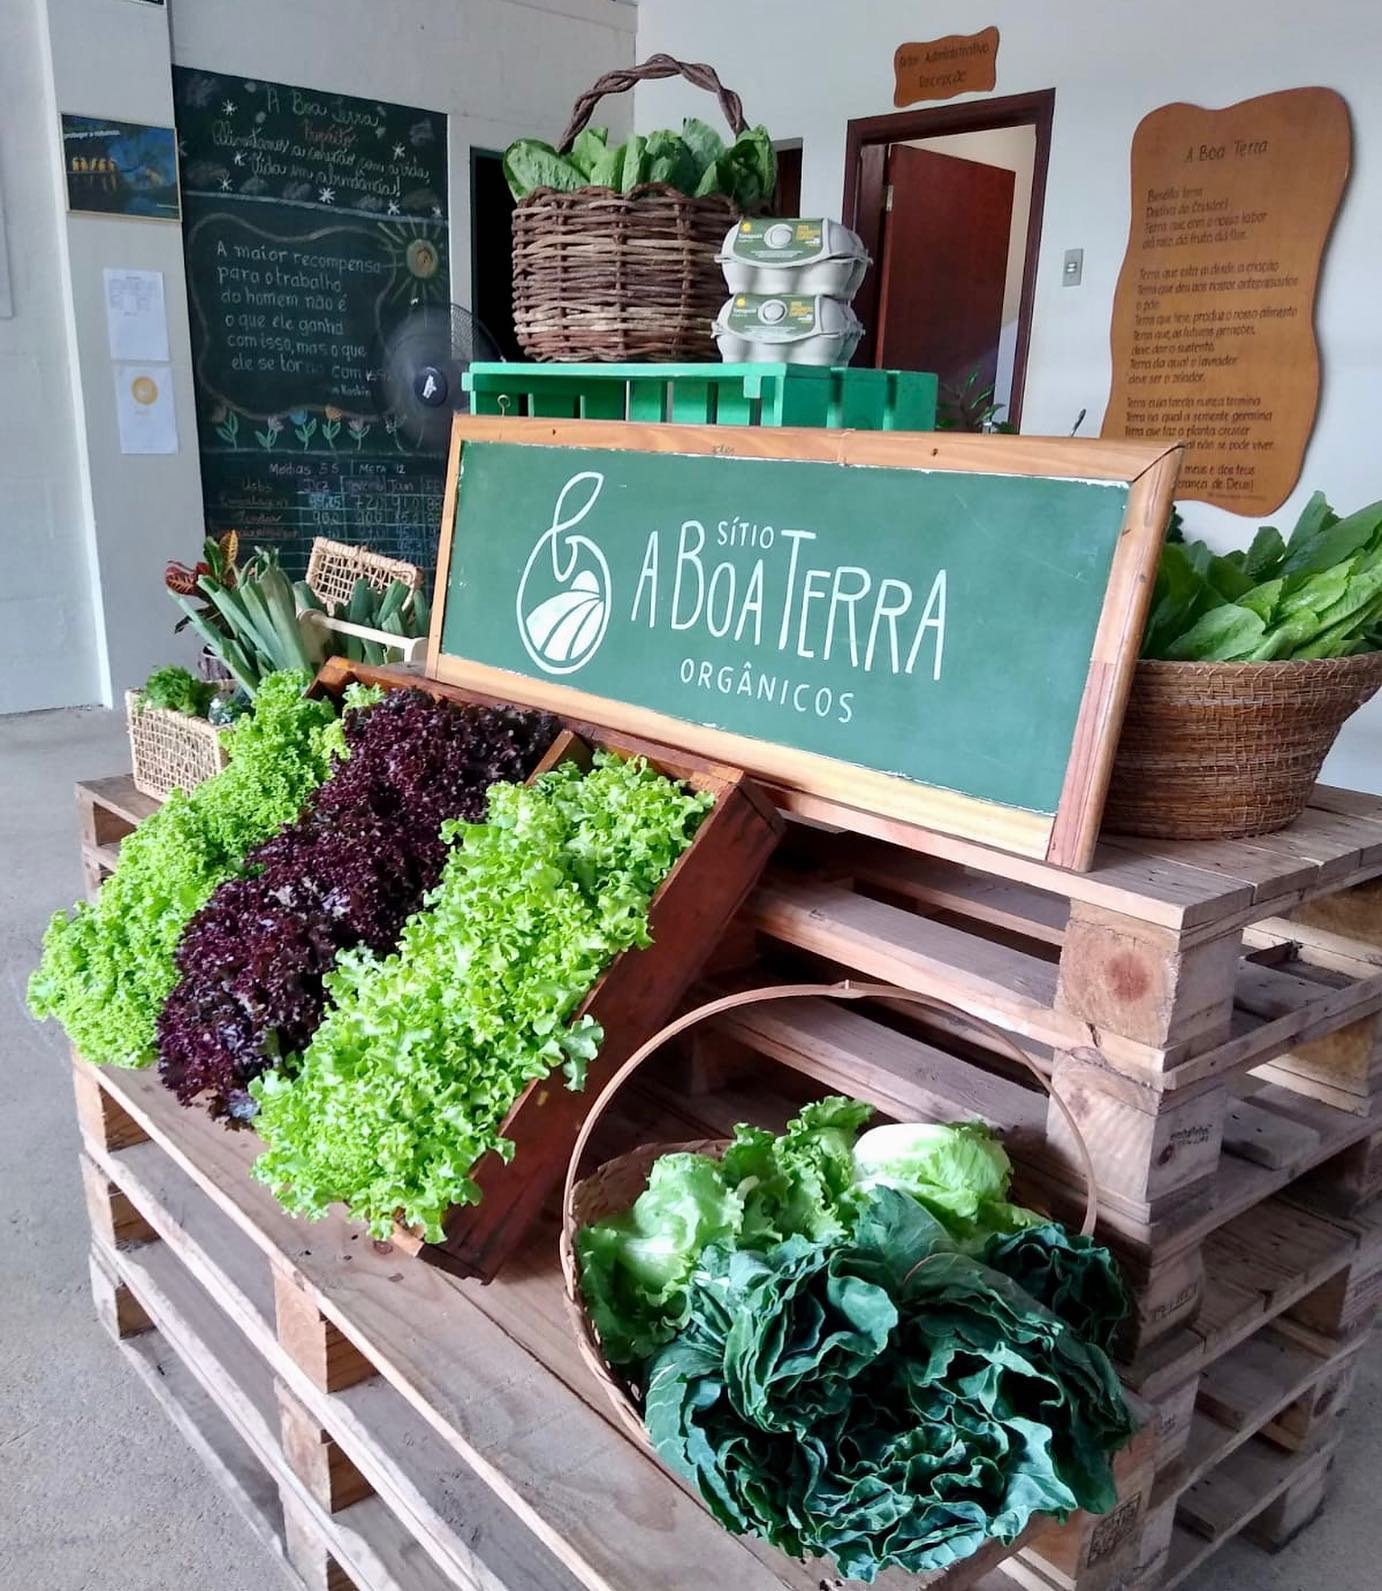 Empresas apostam em delivery de alimentos orgânicos  (Foto: Divulgação/A Boa Terra (Instagram))